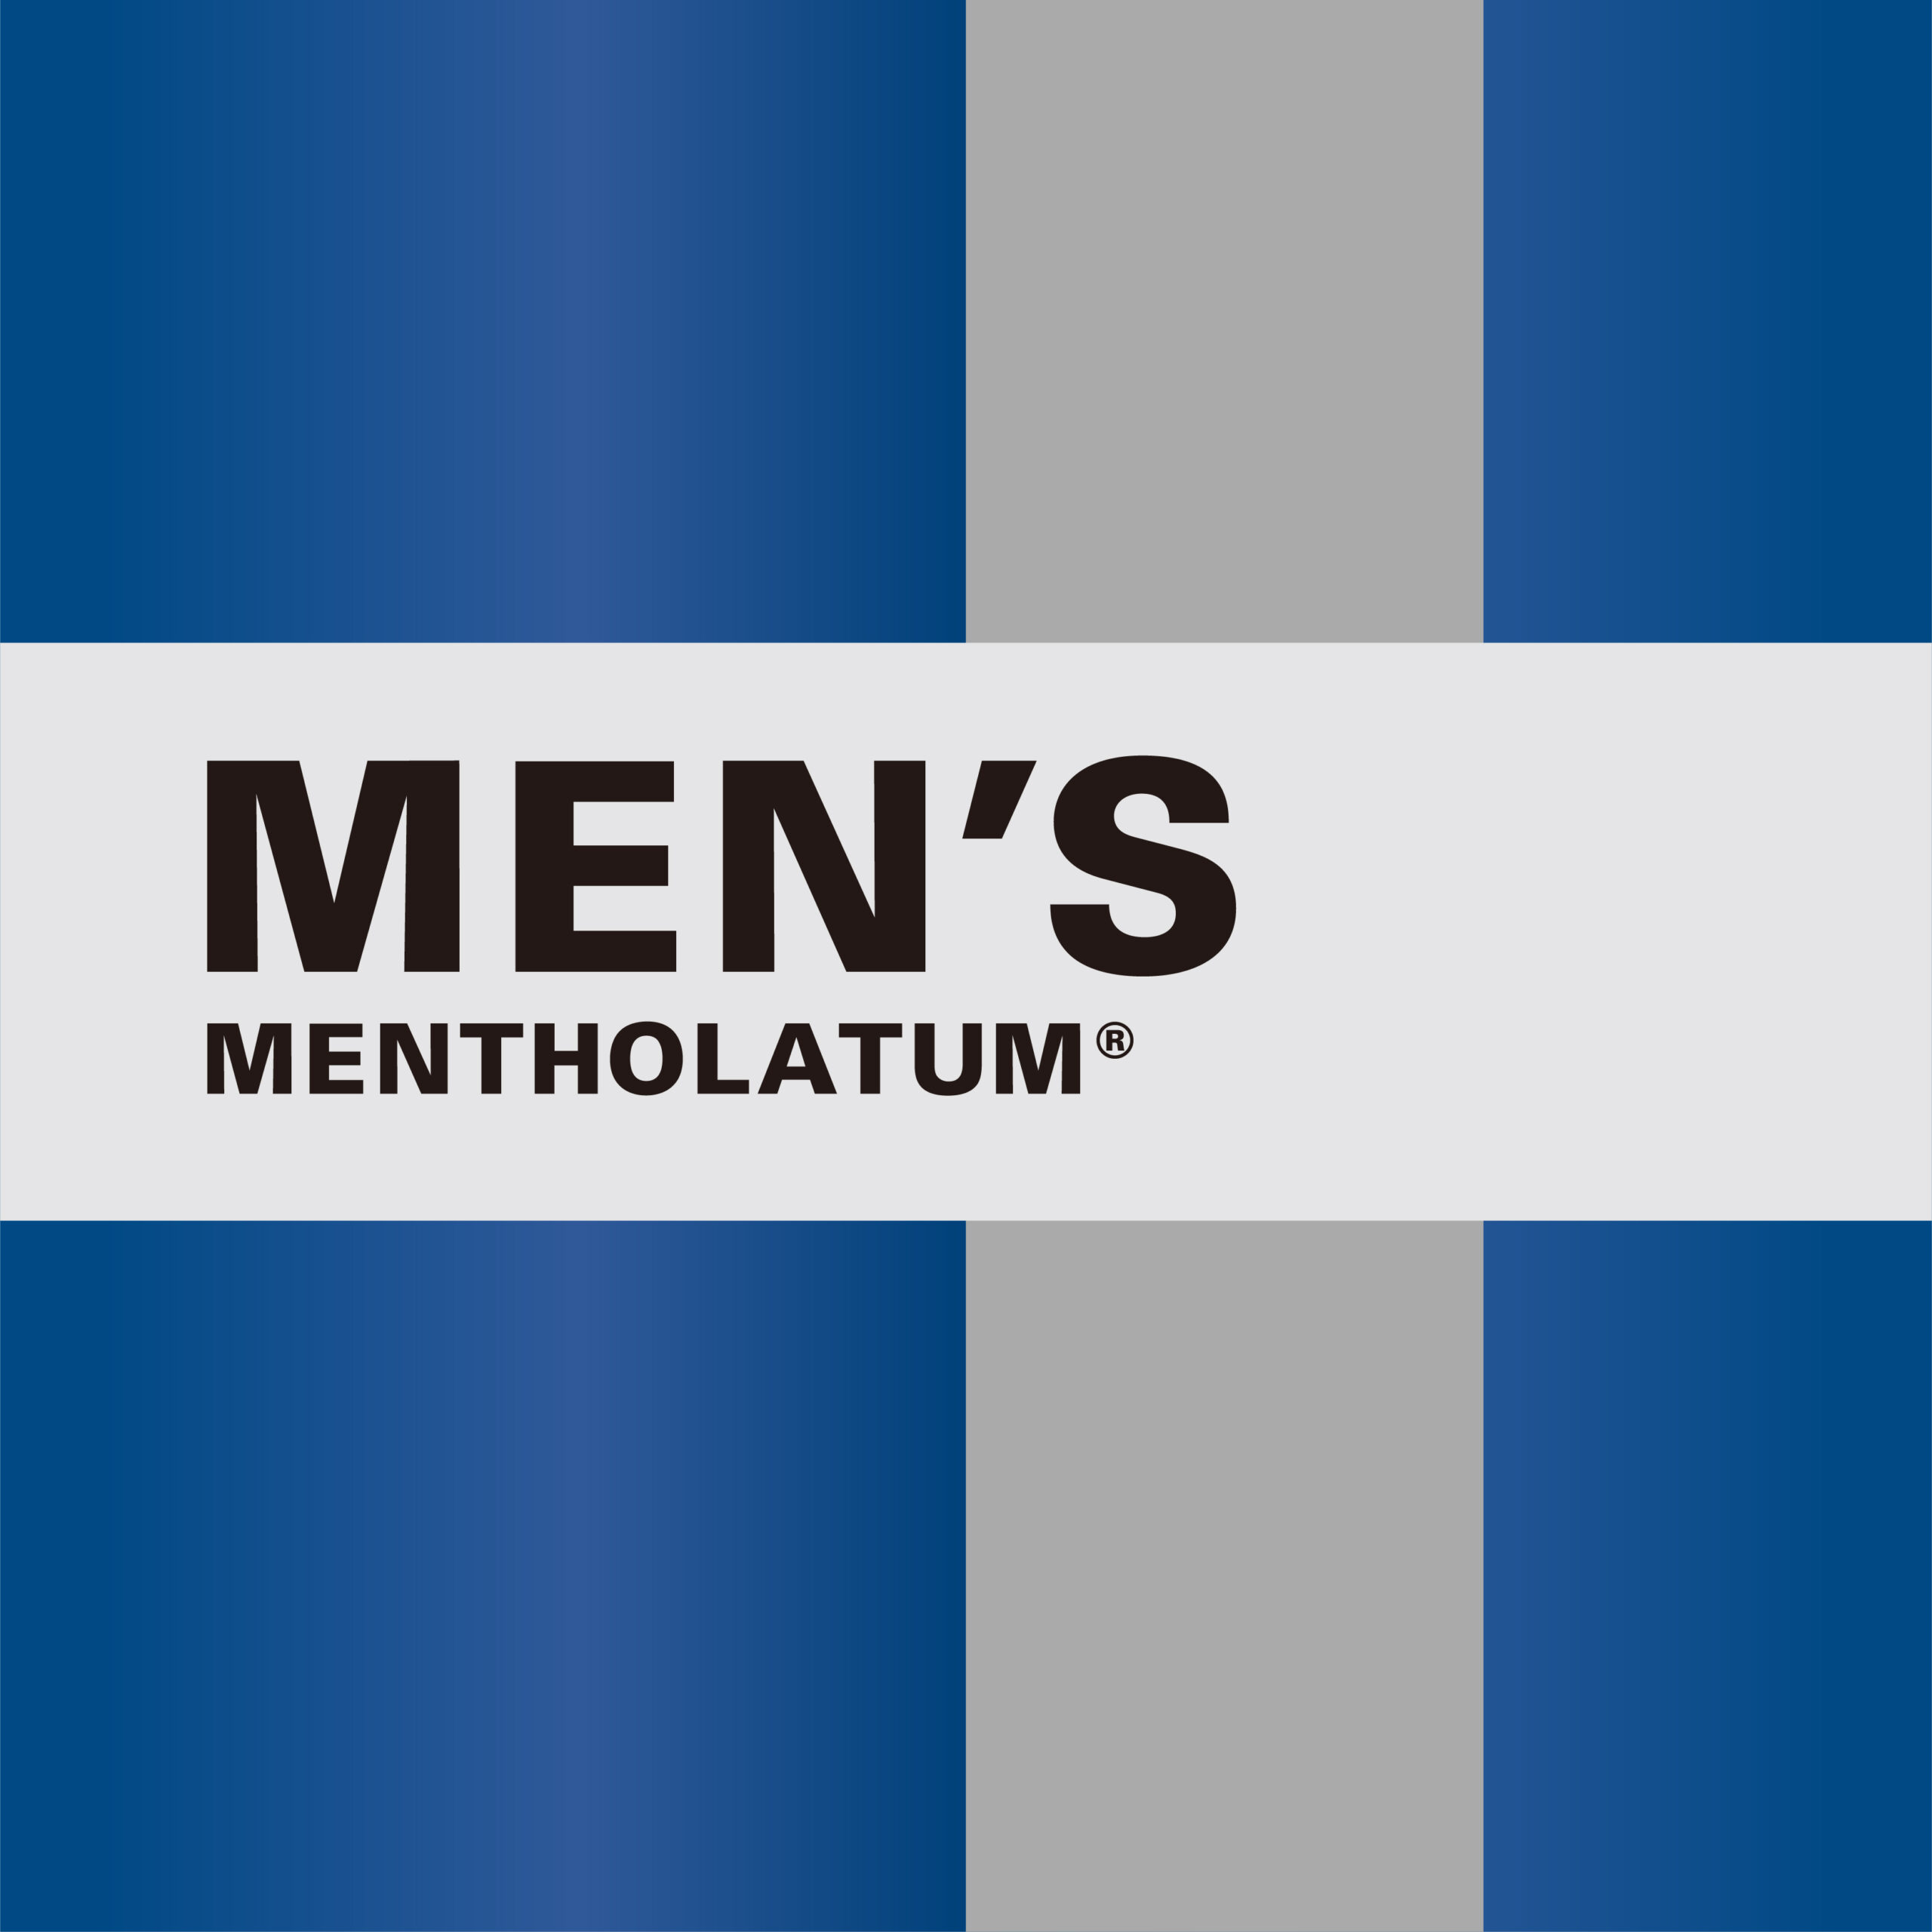 MEN’S MENTHOLATUM